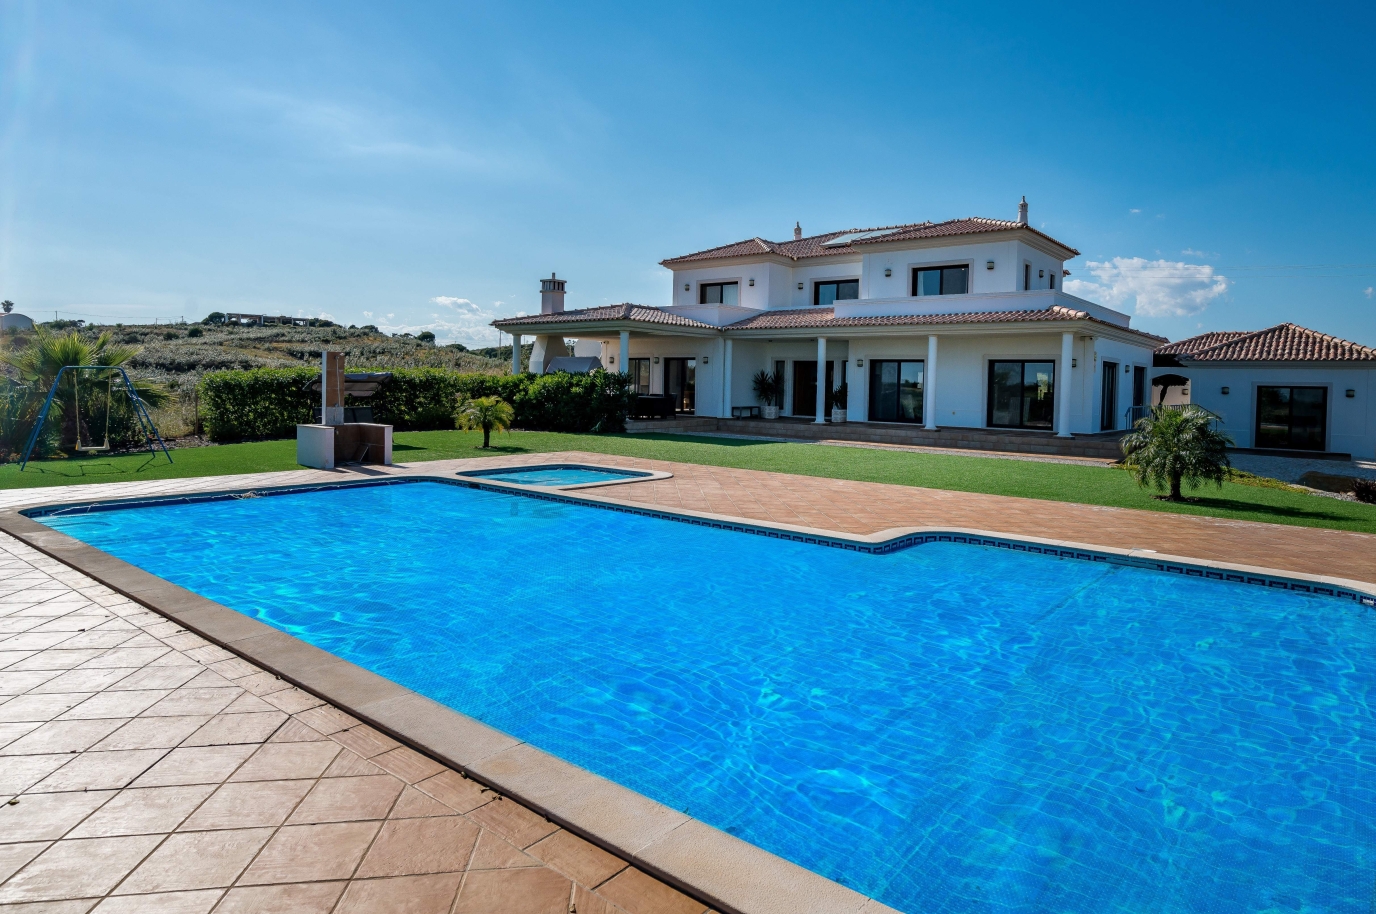 Venda de moradia com piscina em Vila Nova de Cacela, Algarve, Portugal_139480